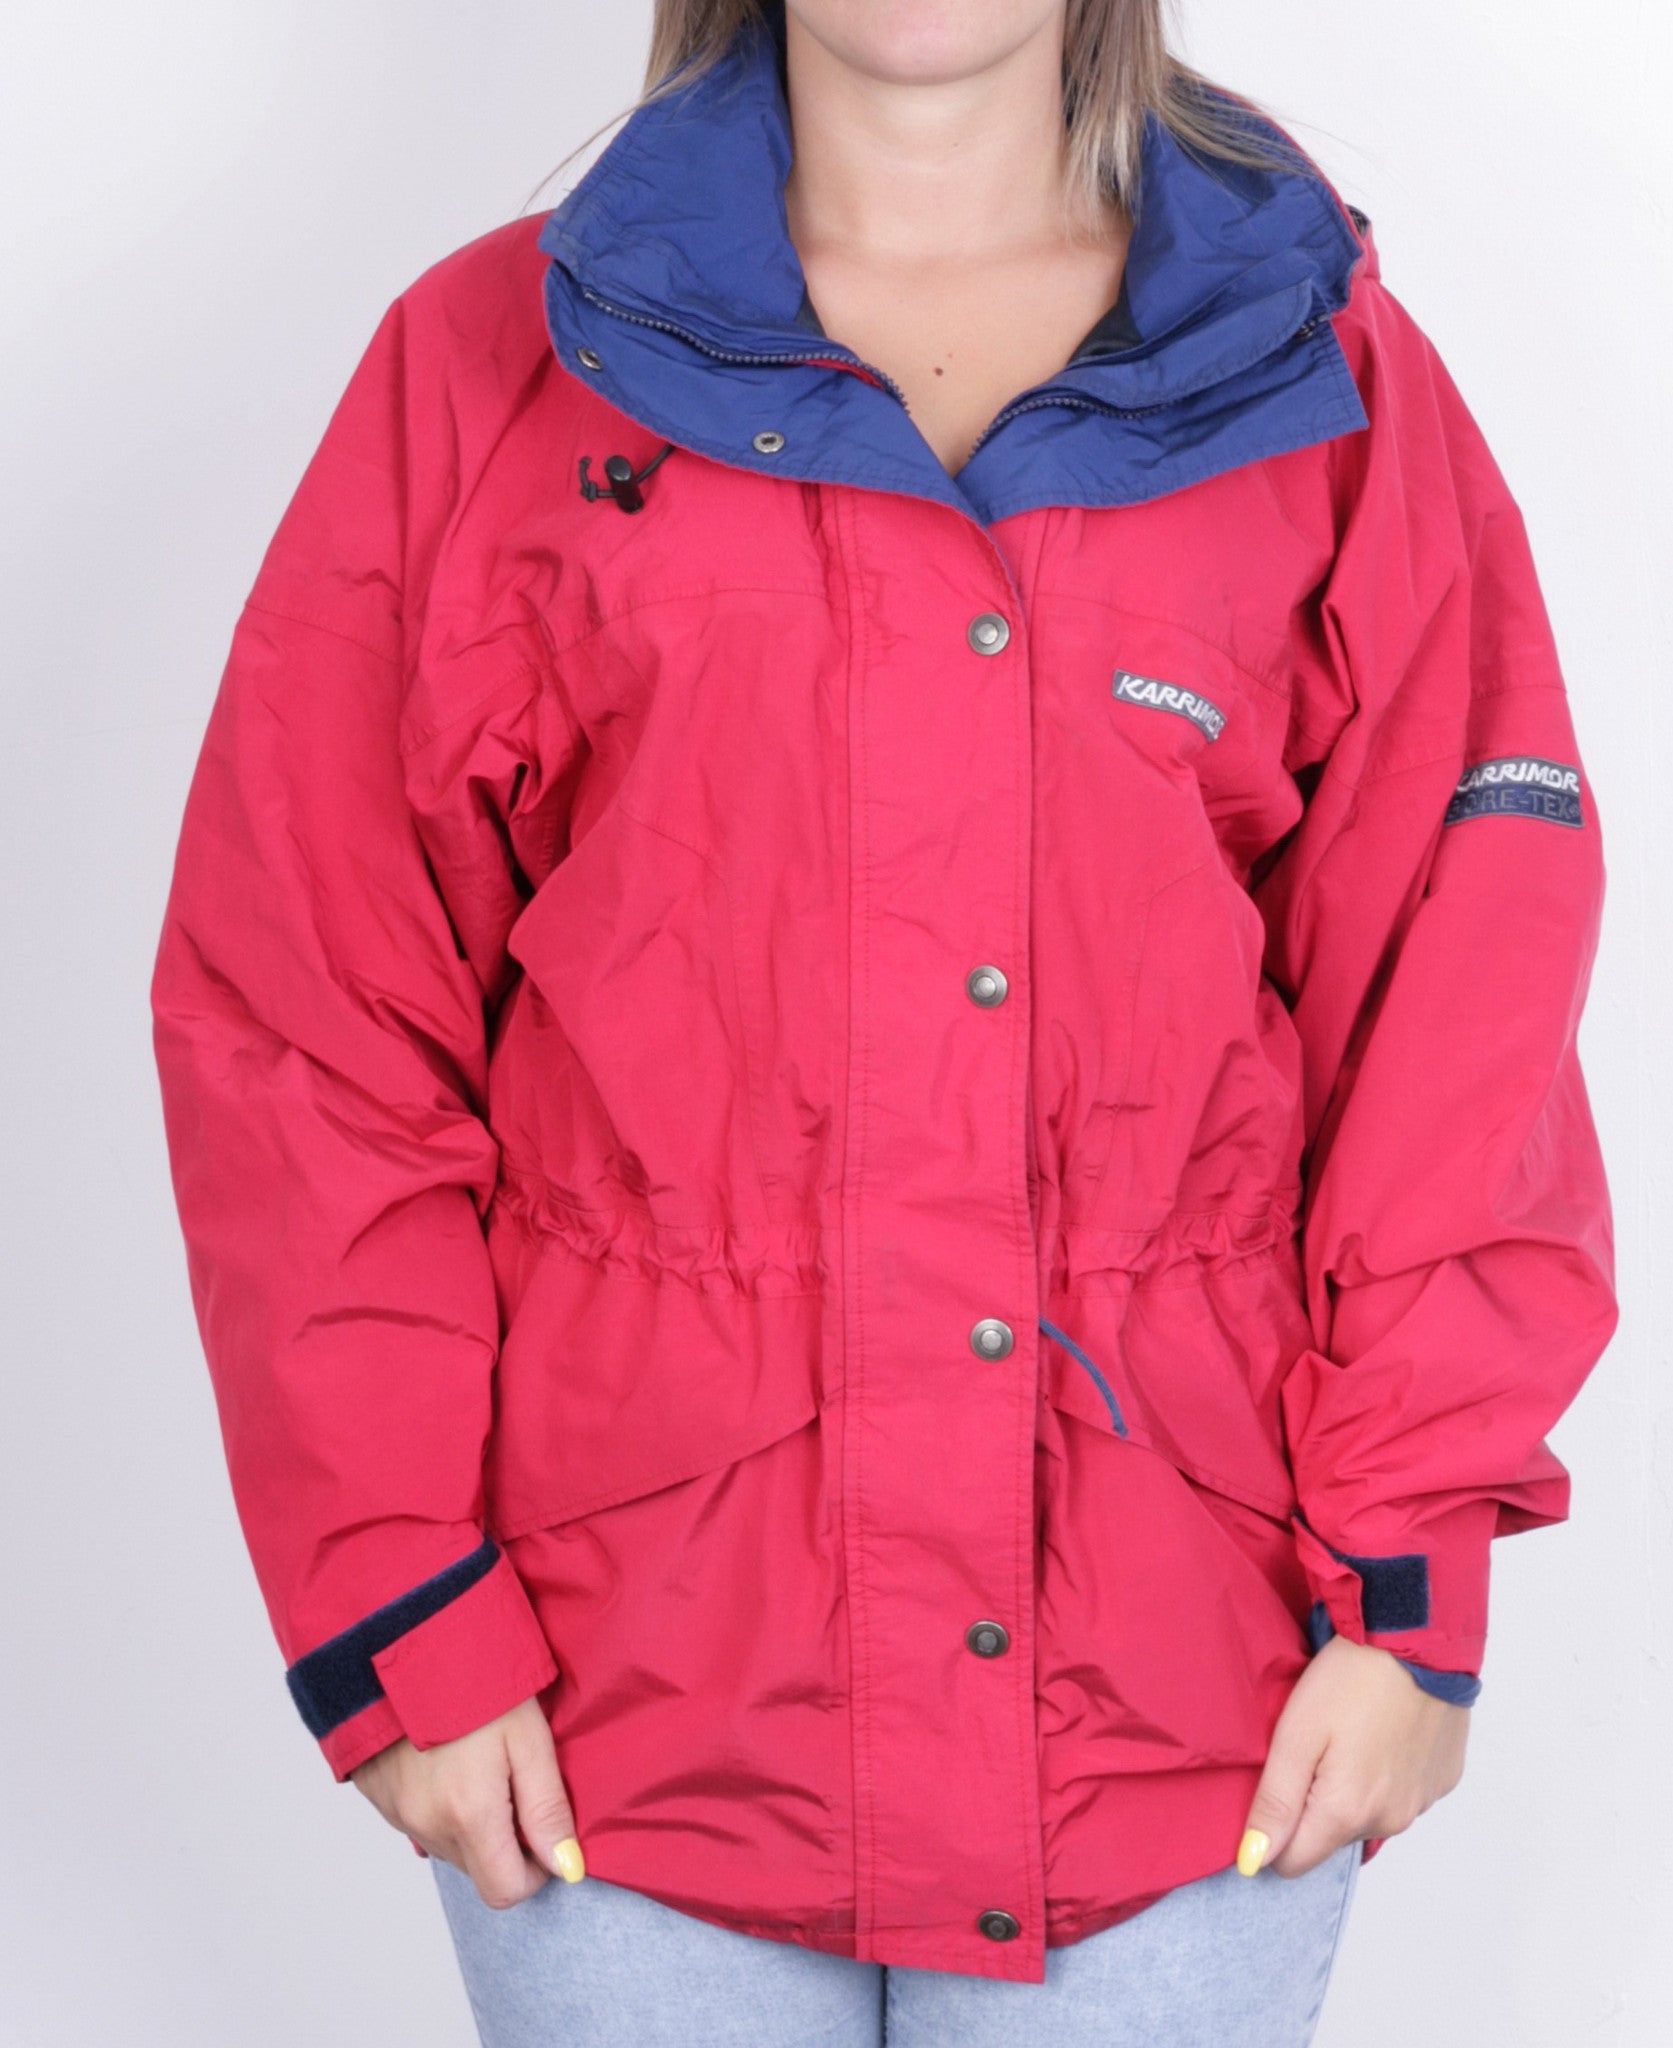 Karrimor Western Isles Womens 12 M/L Jacket Gore-Tex Hood Red Waterproof - RetrospectClothes